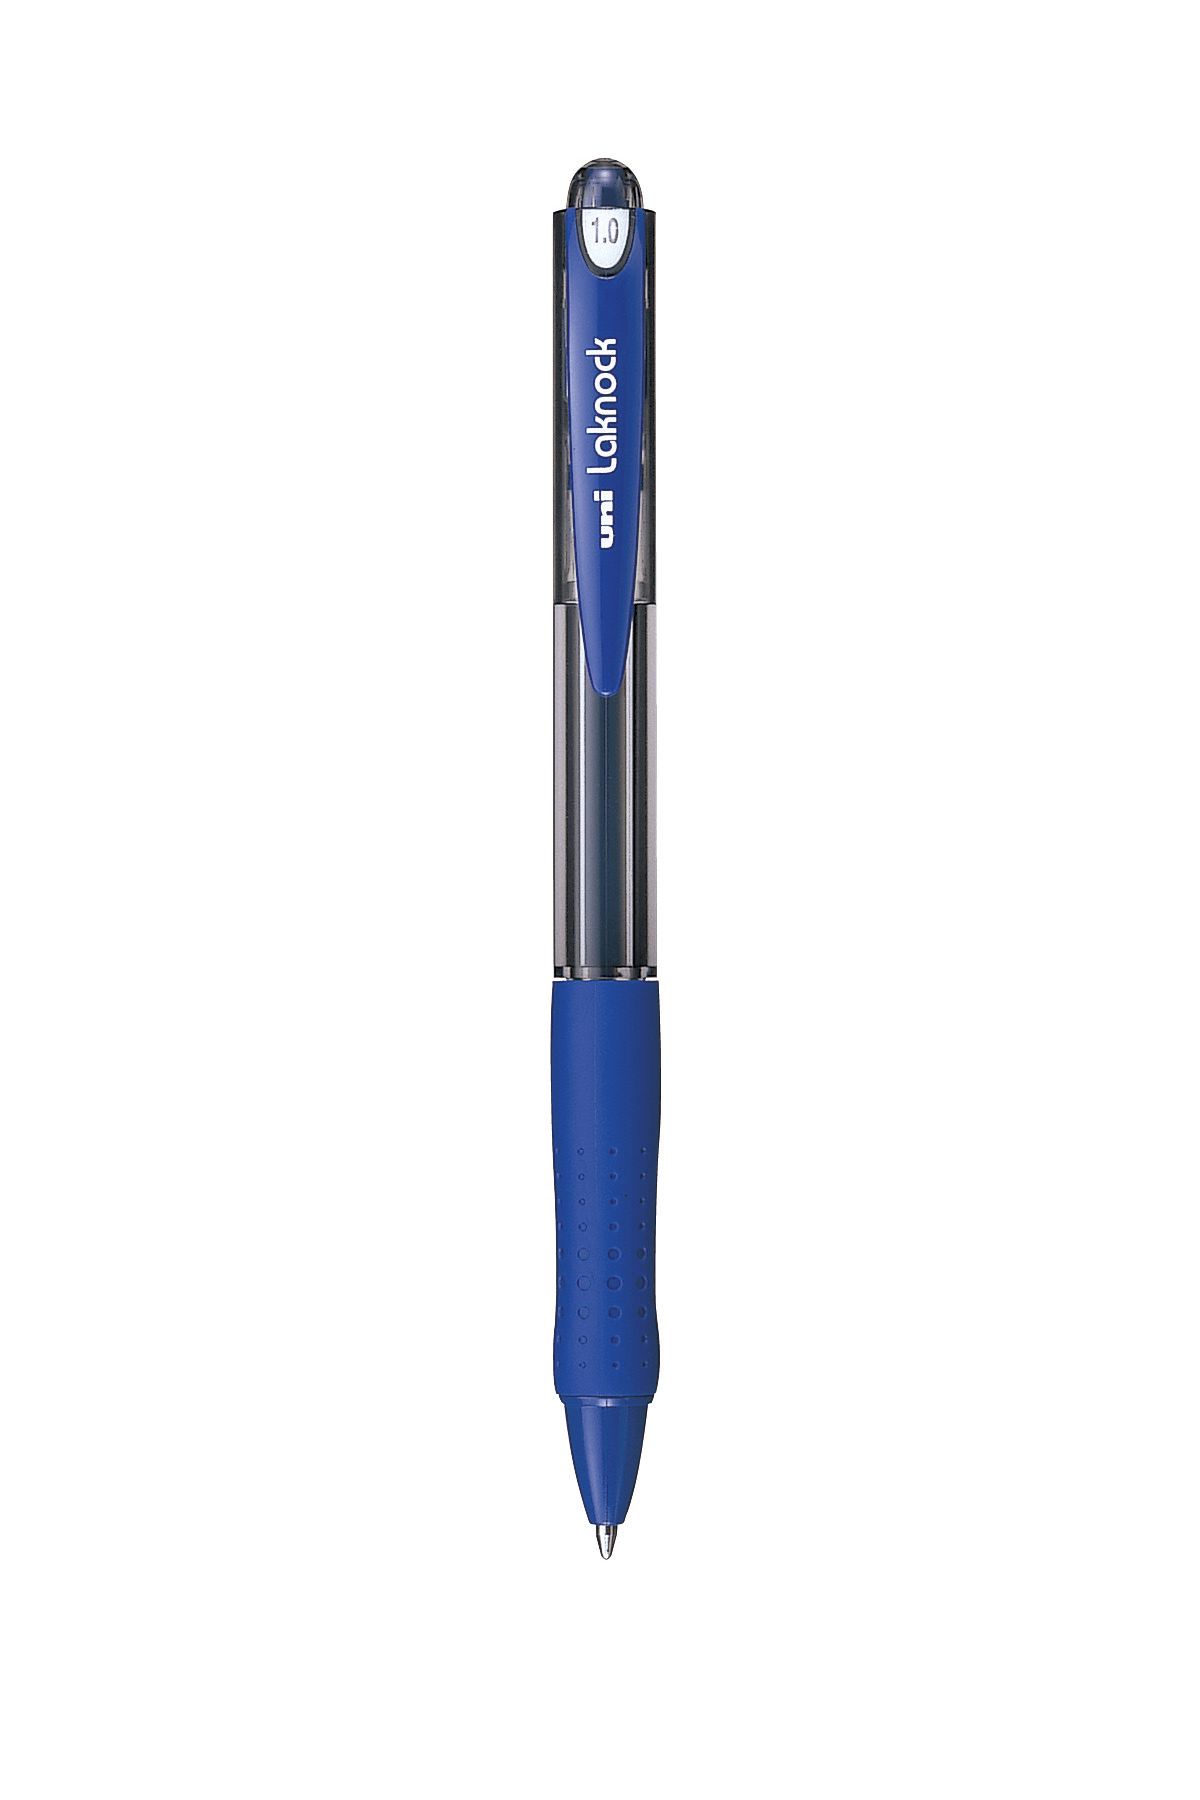 ปากกาลูกลื่นแบบกด uni Laknock SN-100 สีน้ำเงิน 1.0 มม.